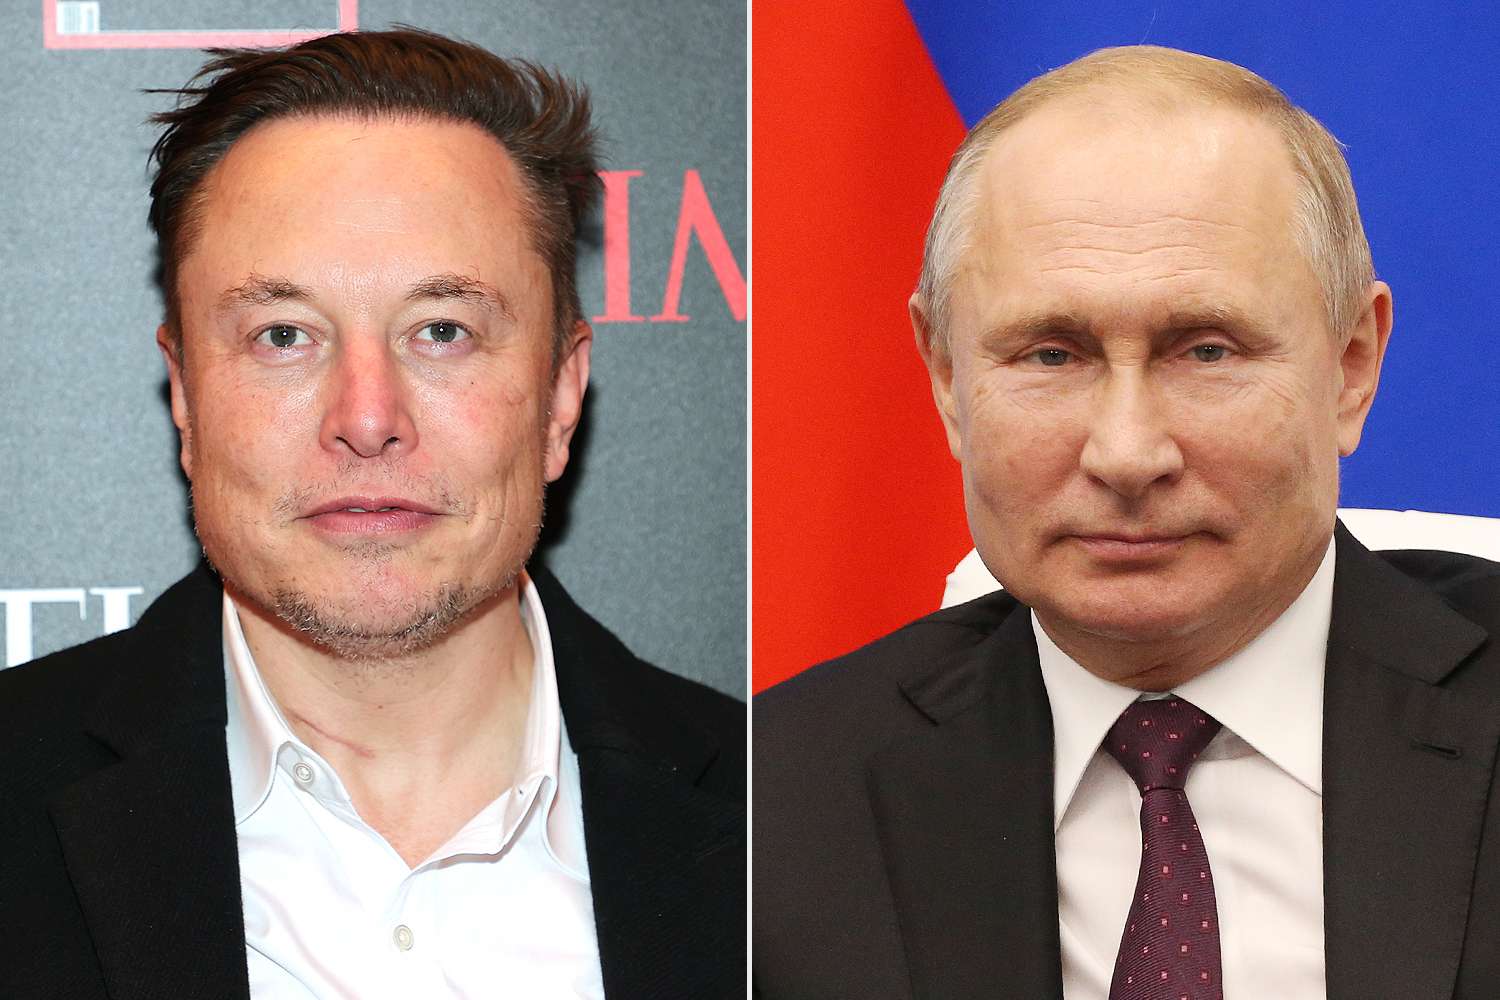 Putin îl laudă pe Elon Musk pentru implantarea unui cip în creierul uman